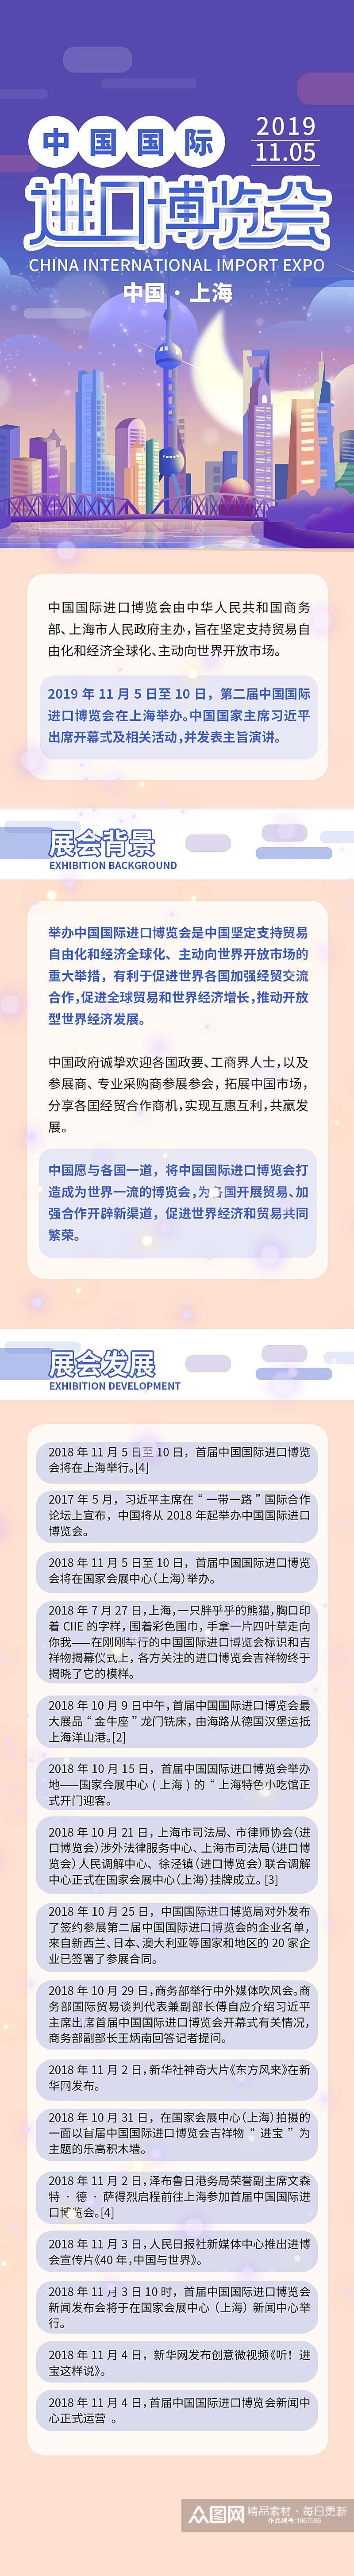 中国国际进口博览会信息报告手机H5长图素材